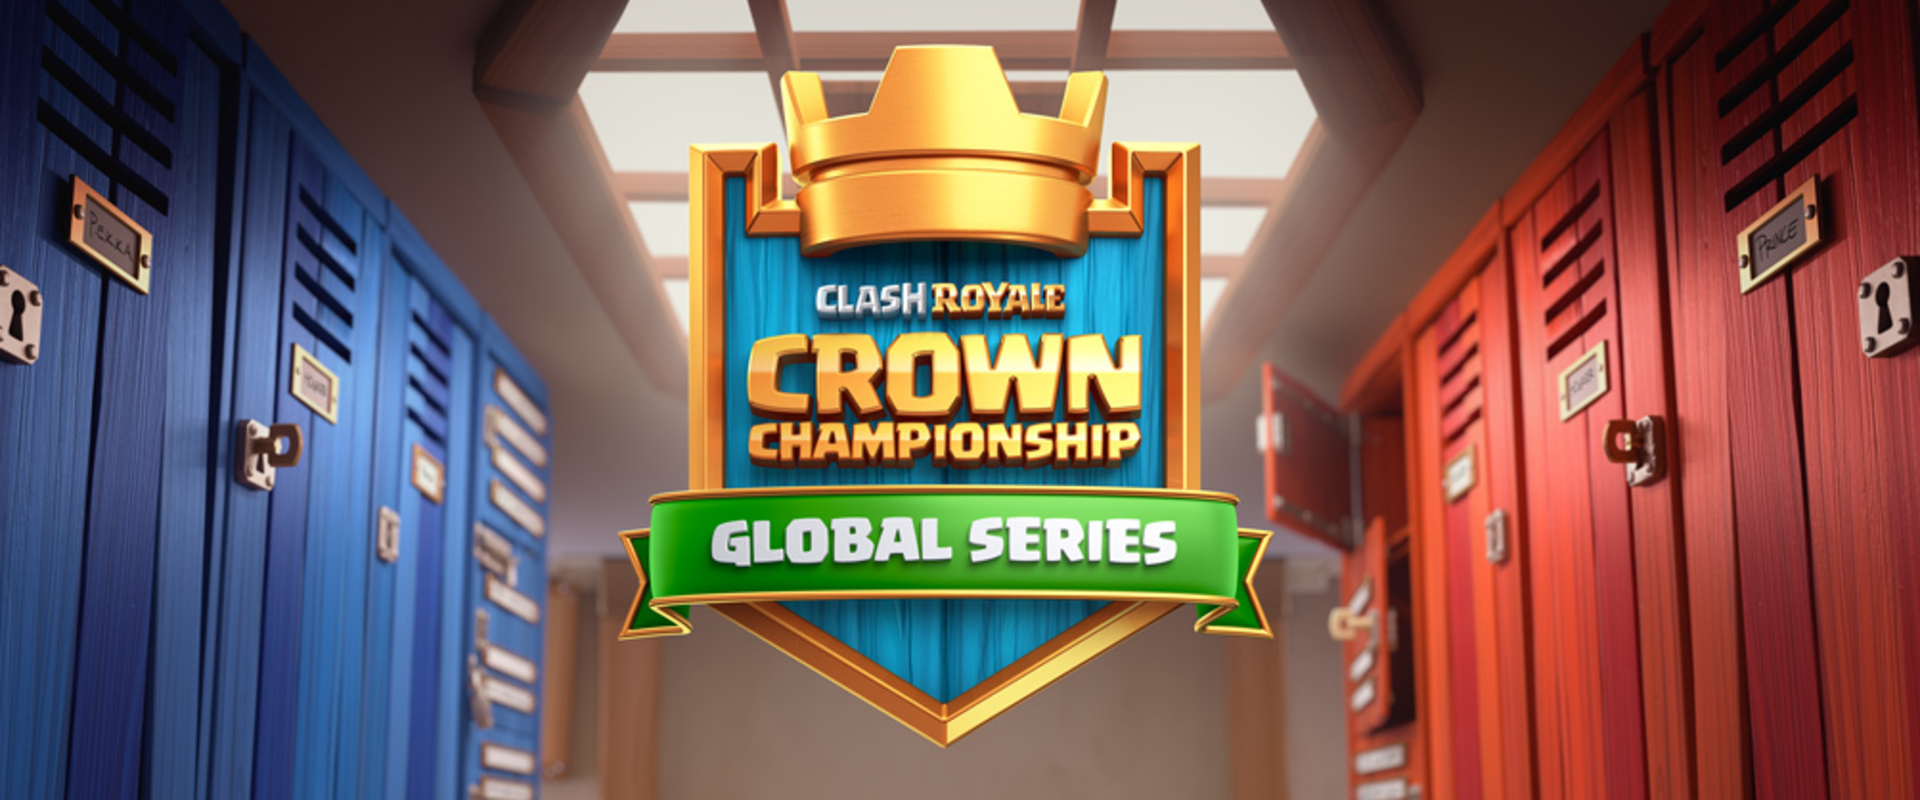 1 millió dollár a tét az első hivatalos Clash Royale bajnokságon - indul a Crown Championship